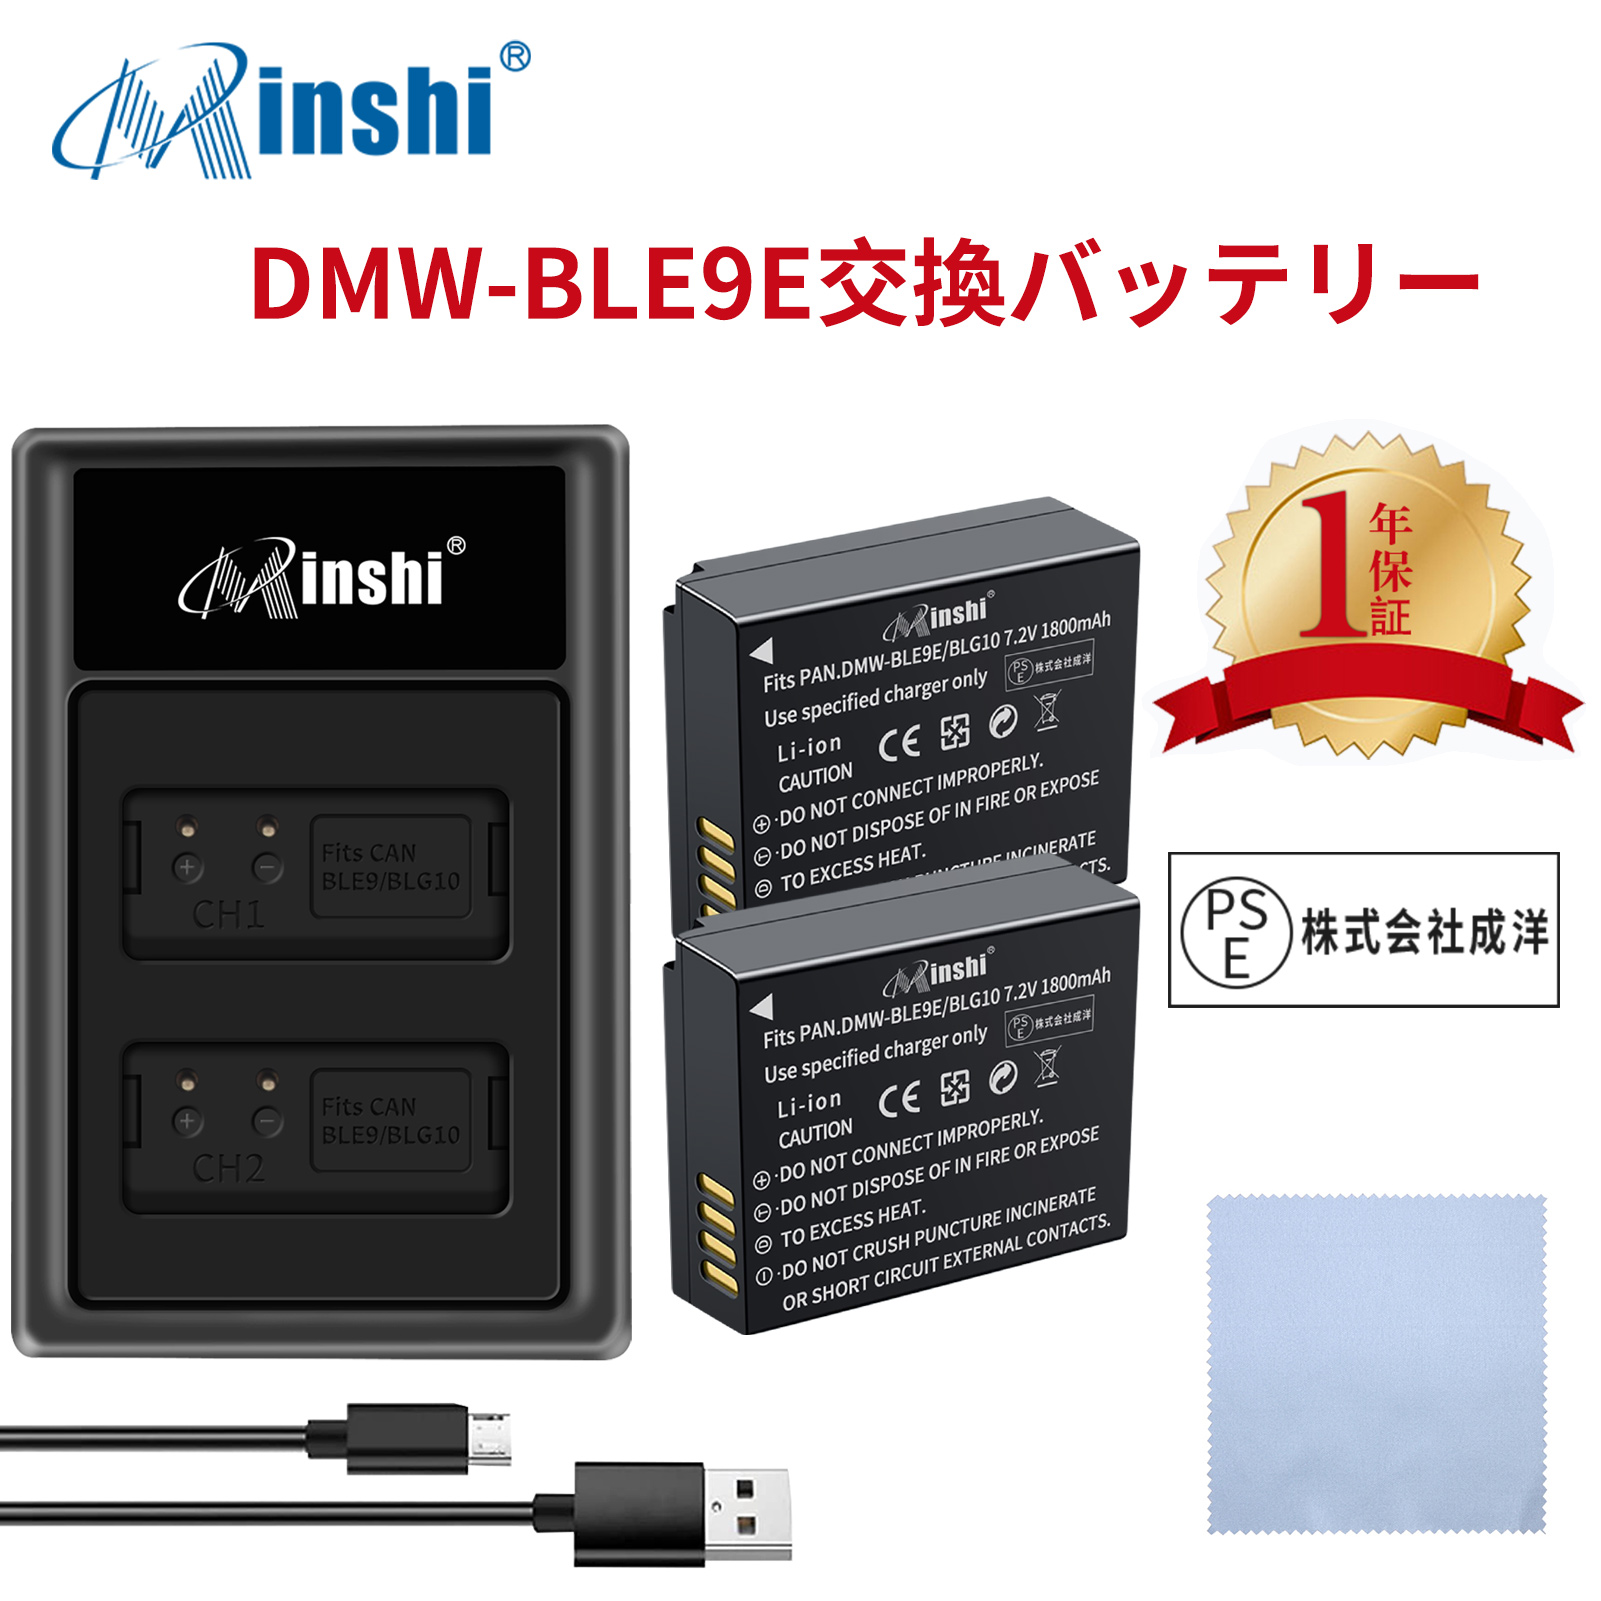 【セット】minshi Panasonic DMC-GX7MK3  【1800mAh 7.2V】PSE認定済 高品質 DMW-BLG10 交換用バッテリー【2個】